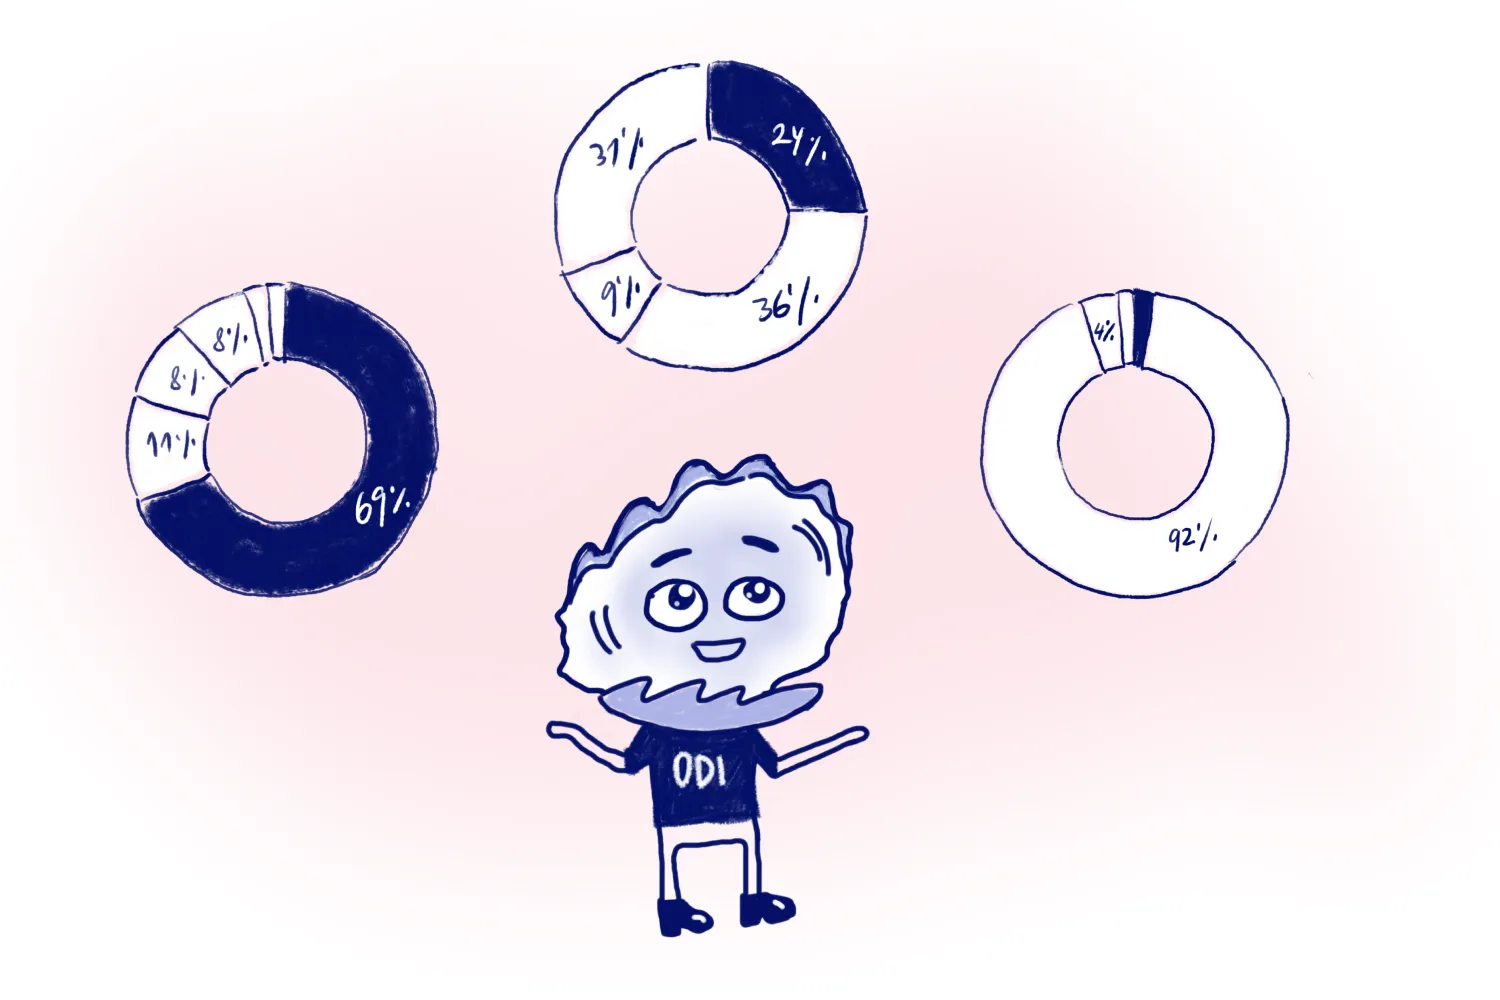 ODI jongliert mit Kreisdiagrammen